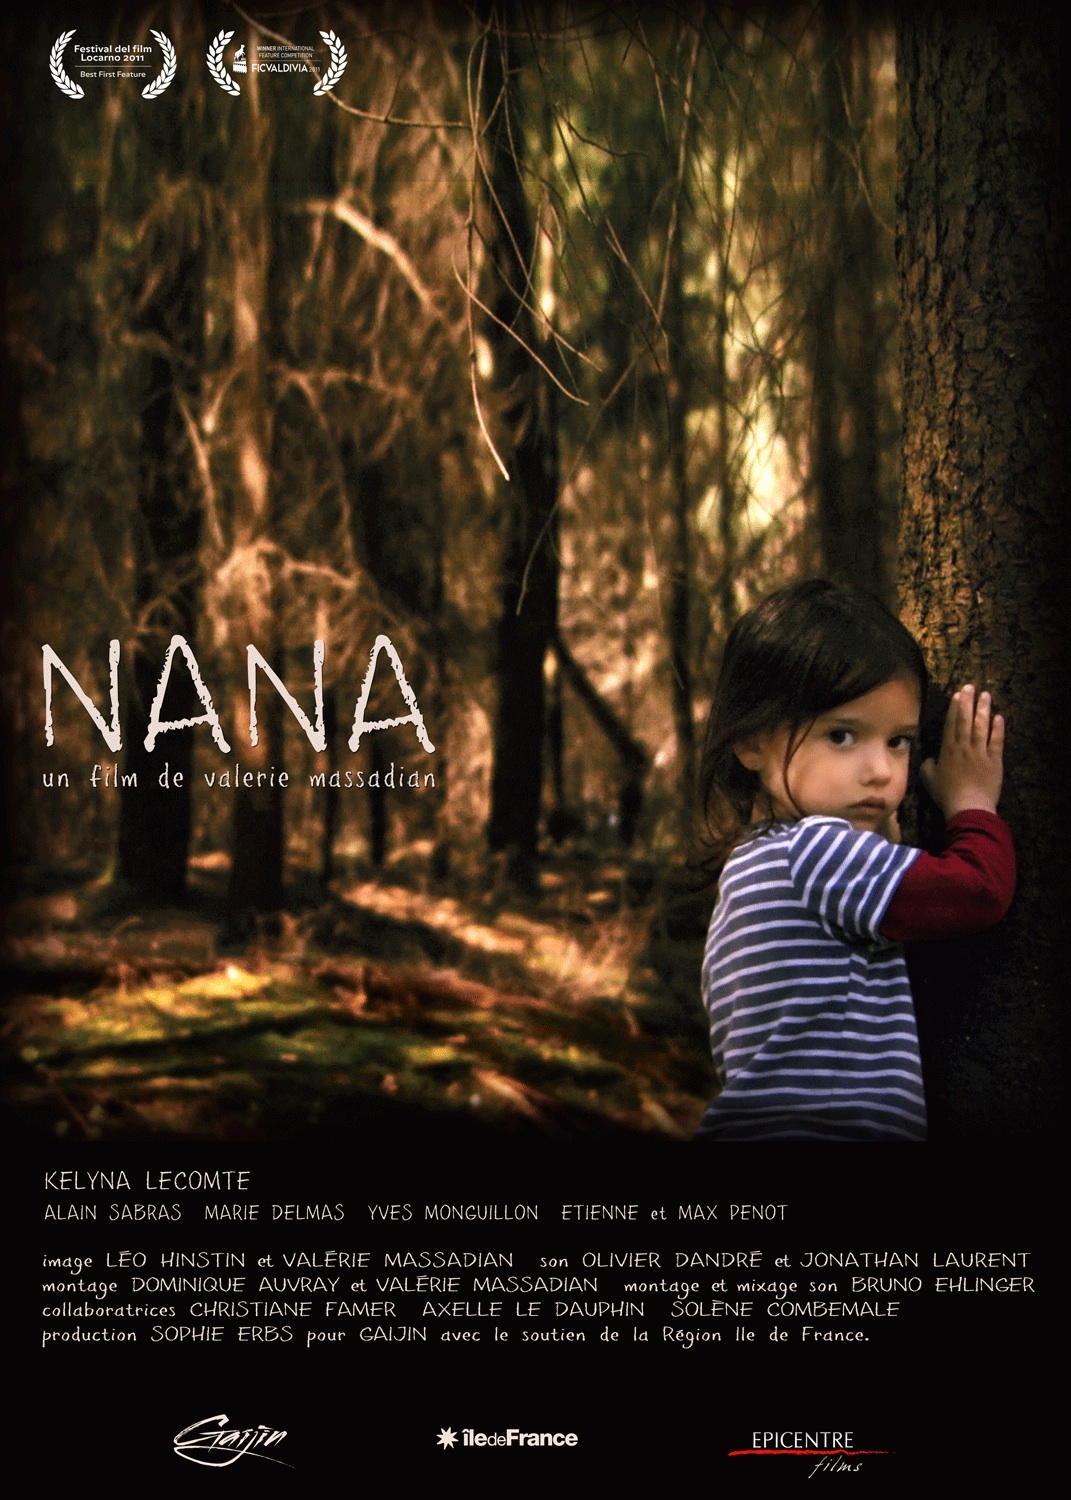 Nana - Movie Poster #1 (Original)